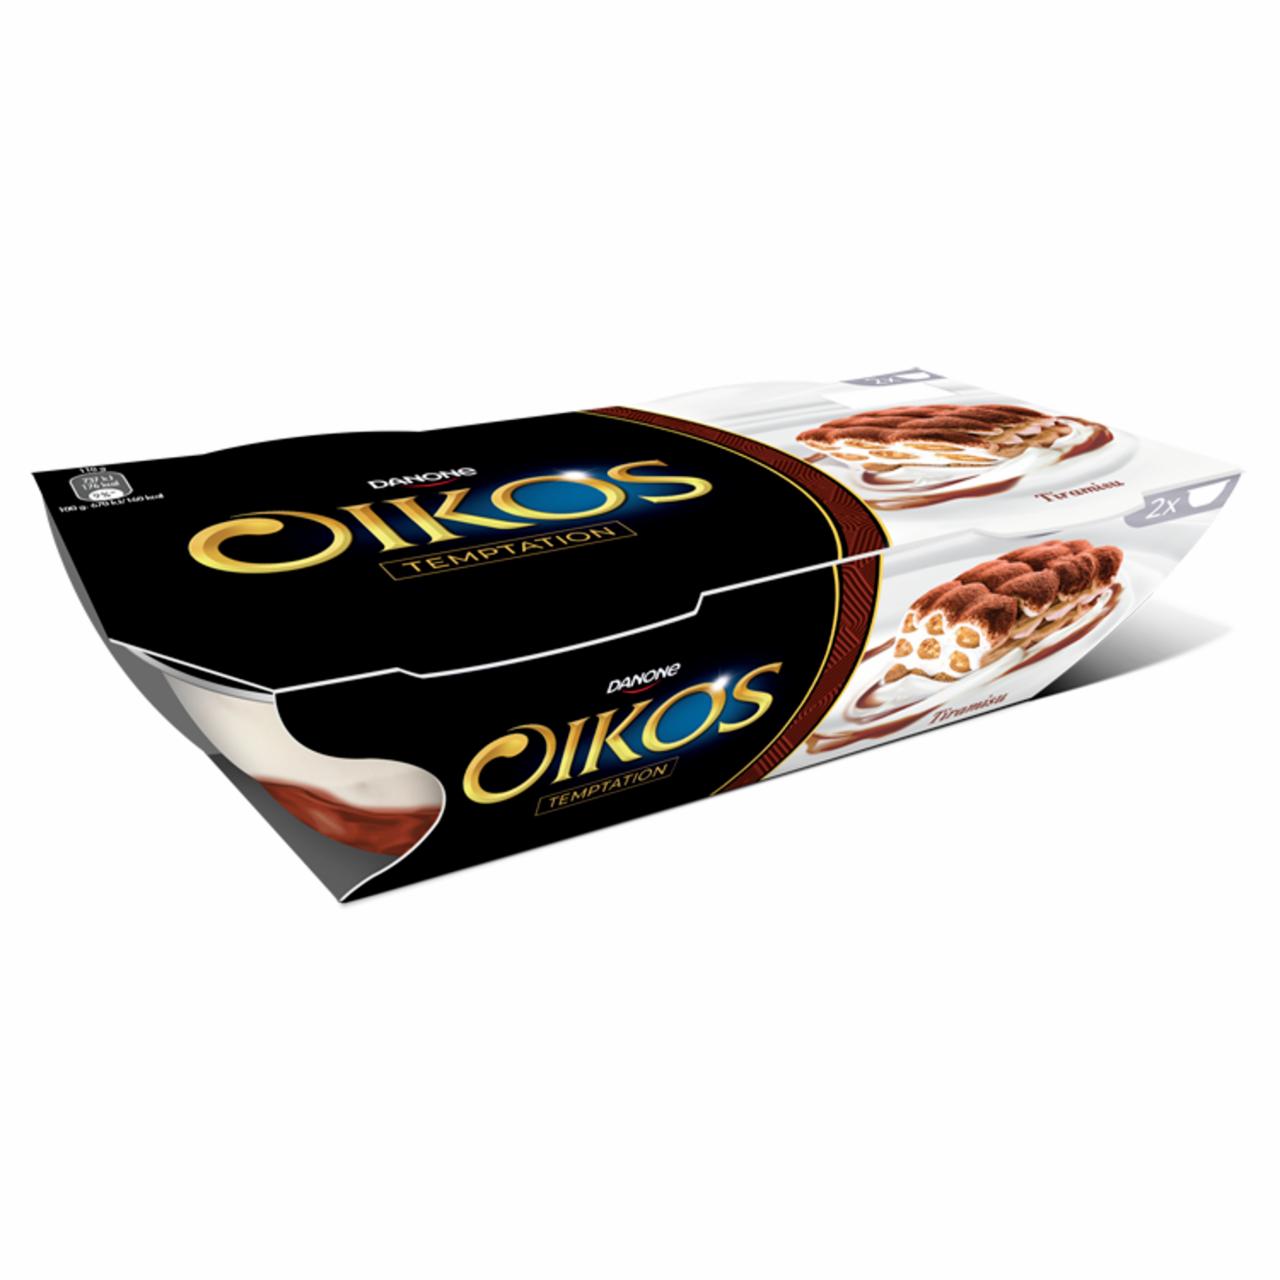 Képek - Danone Oikos élőflórás görög krémjoghurt tiramisuízű öntettel 2 x 110 g